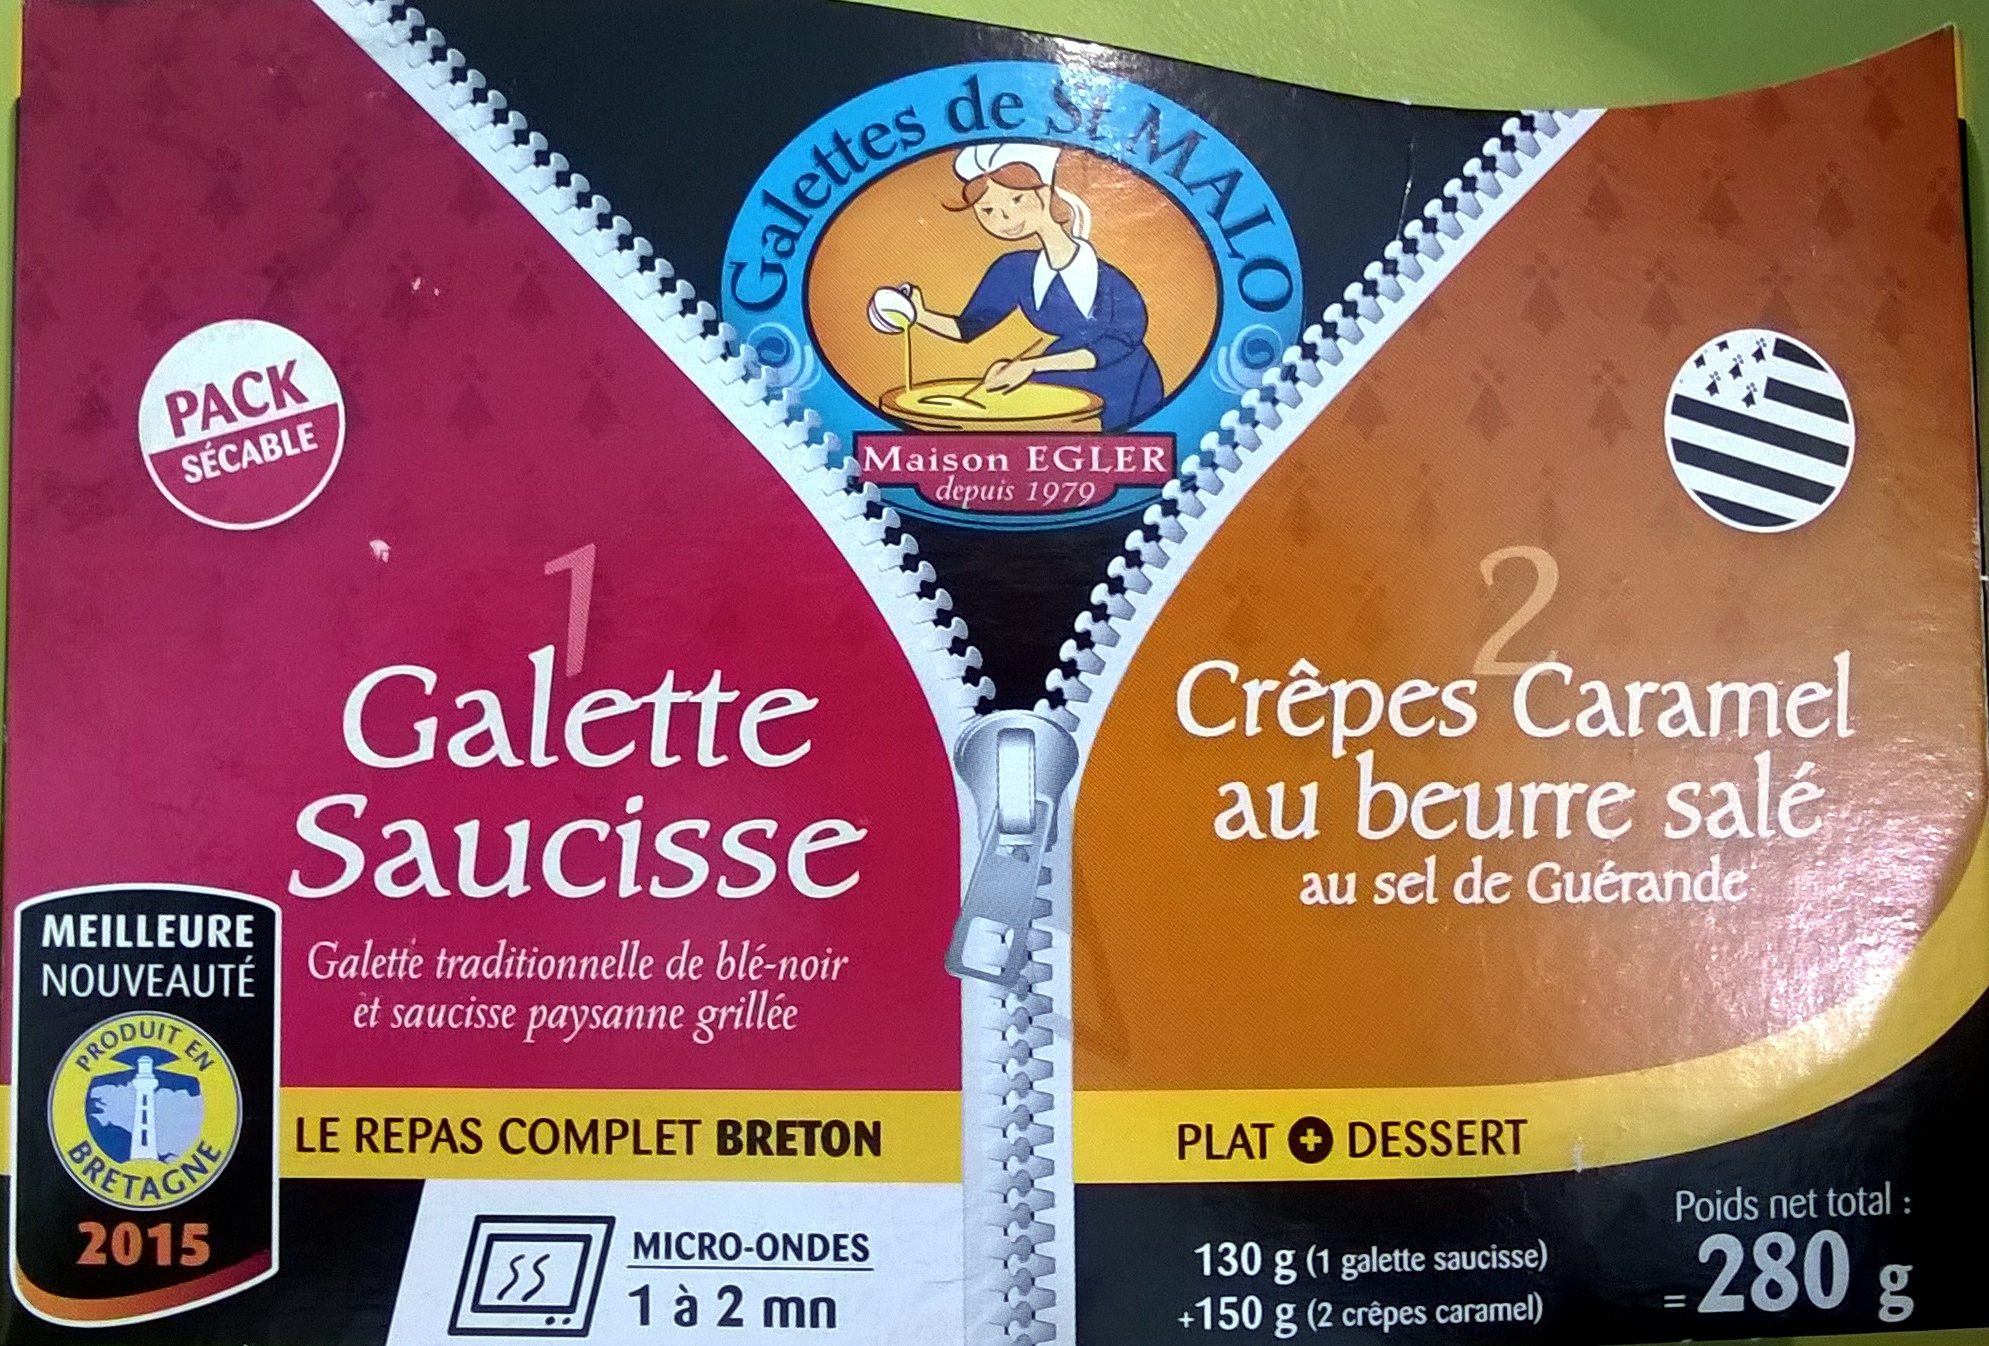 1 galettes saucisse 2 crêpes caramel au beurre salé - Product - fr